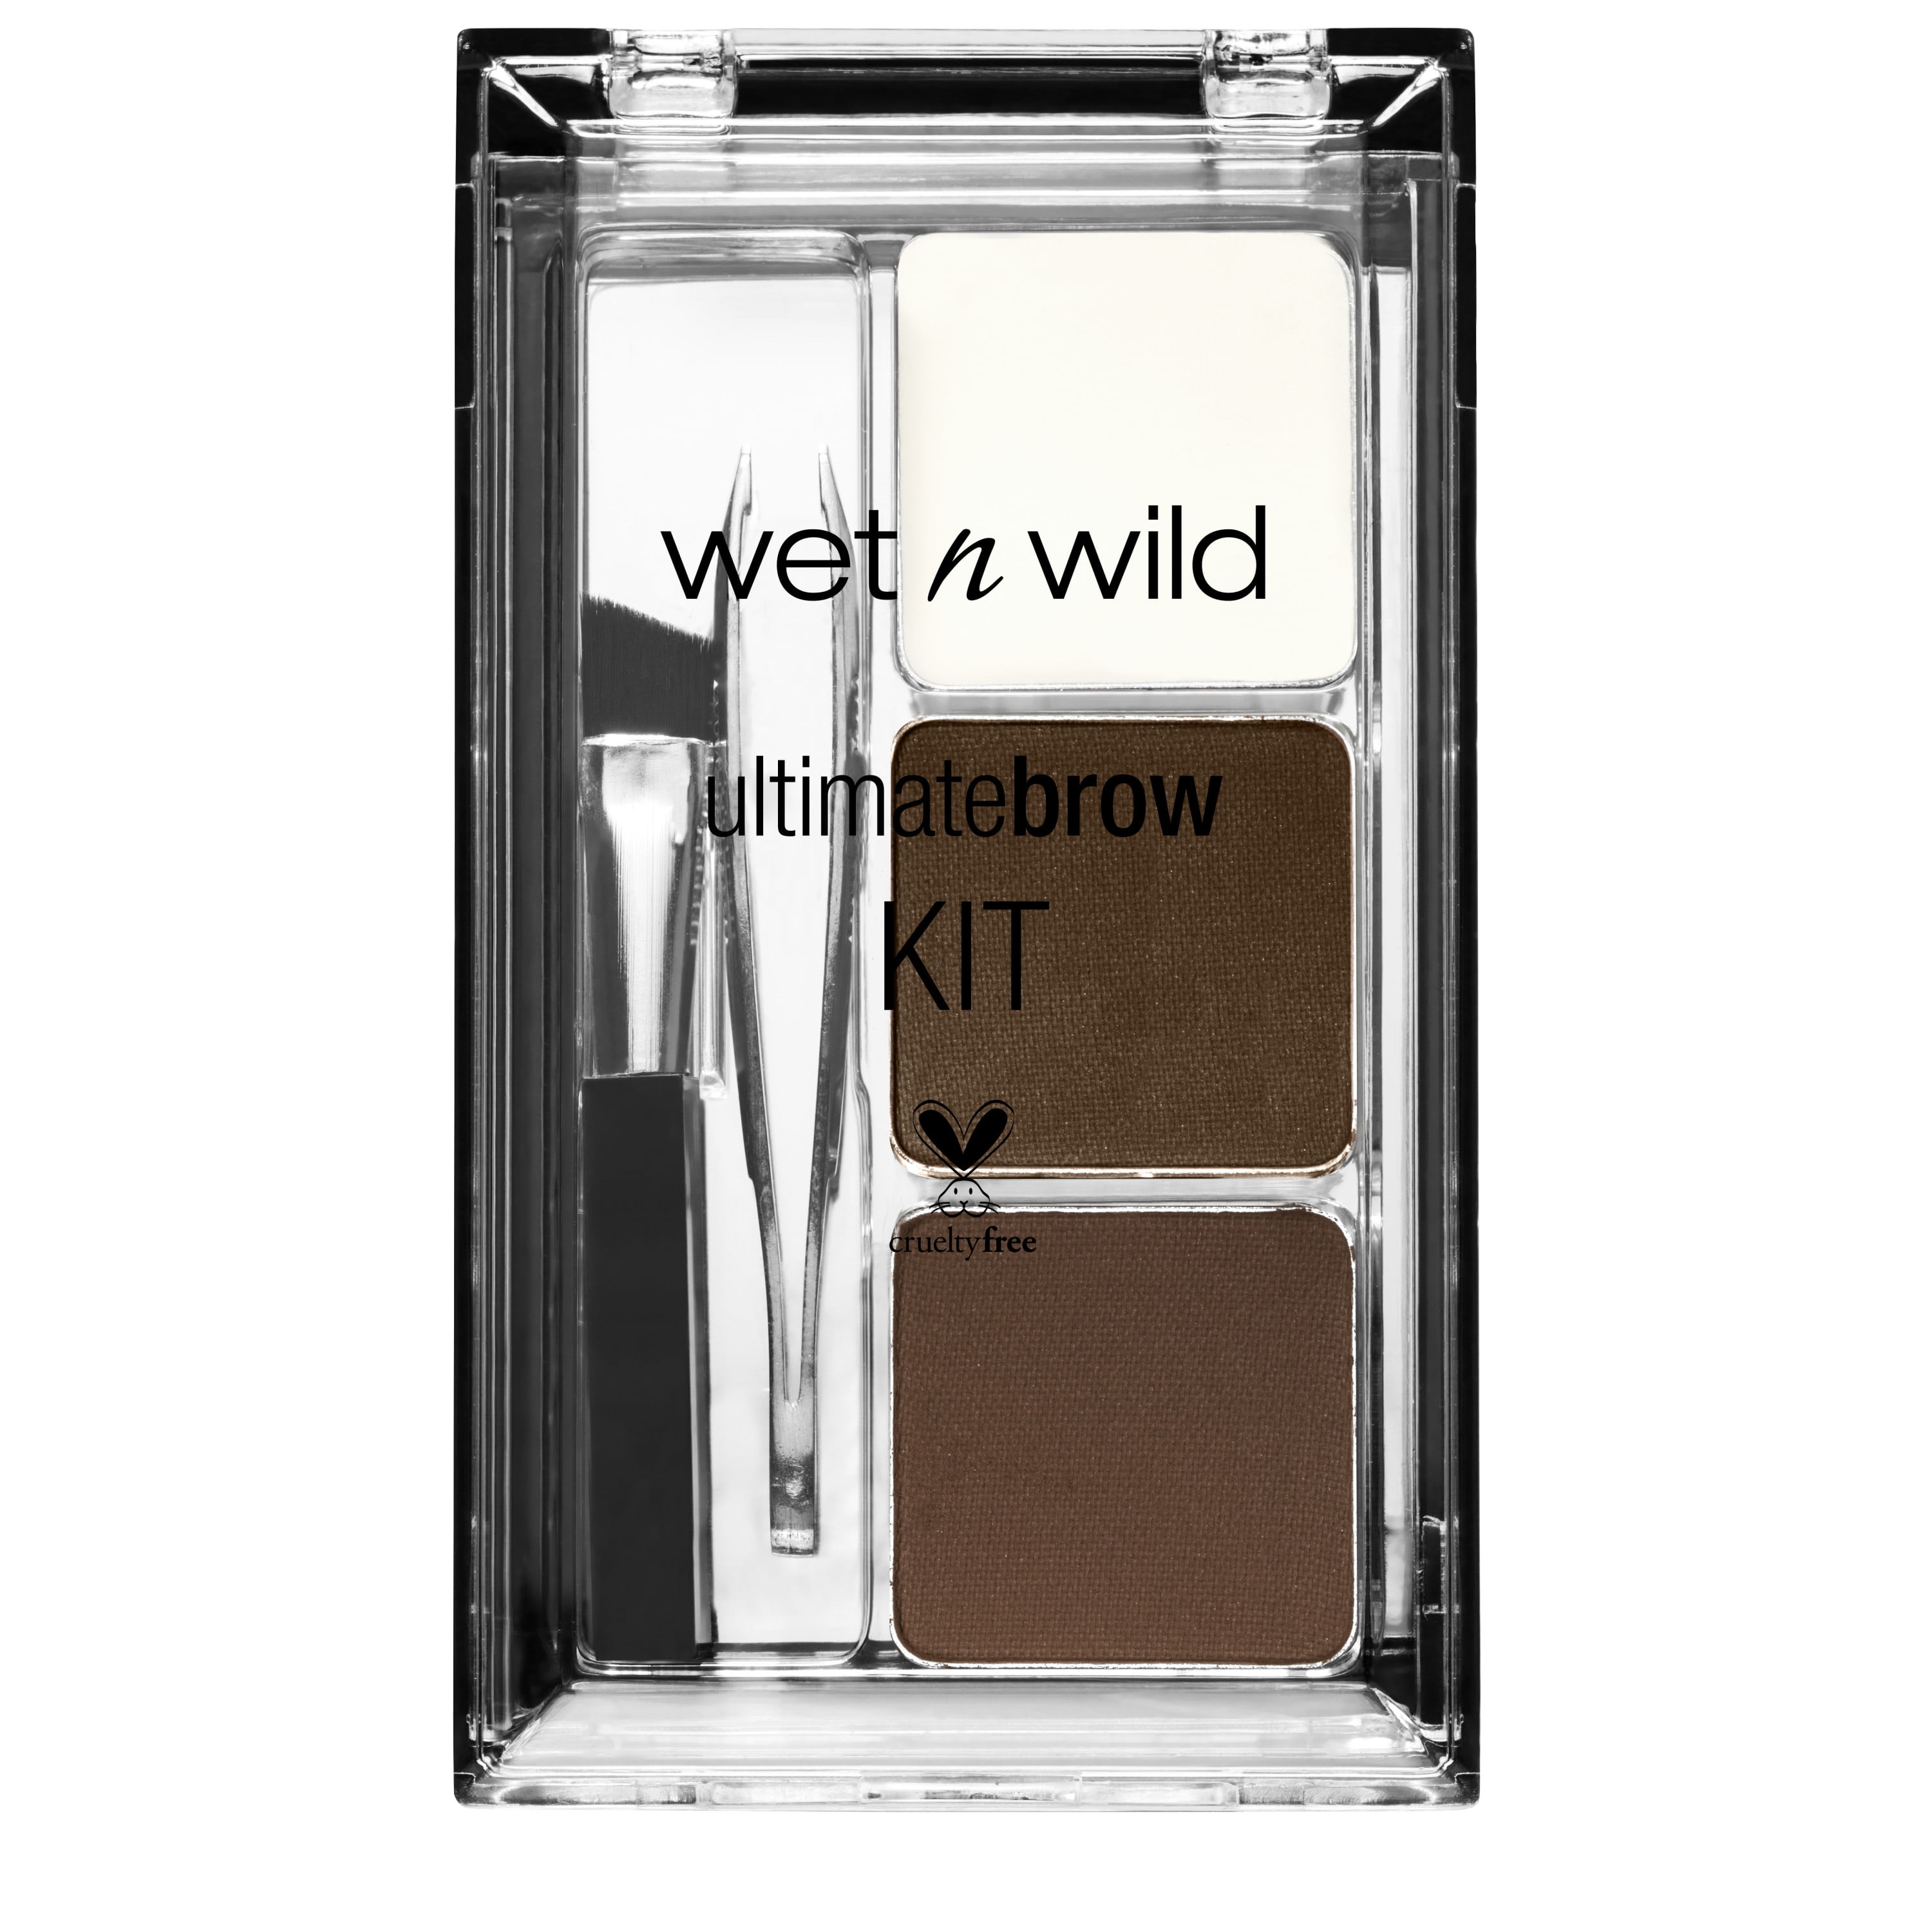 wet n wild Ultimate Brow Kit, Dark Brown